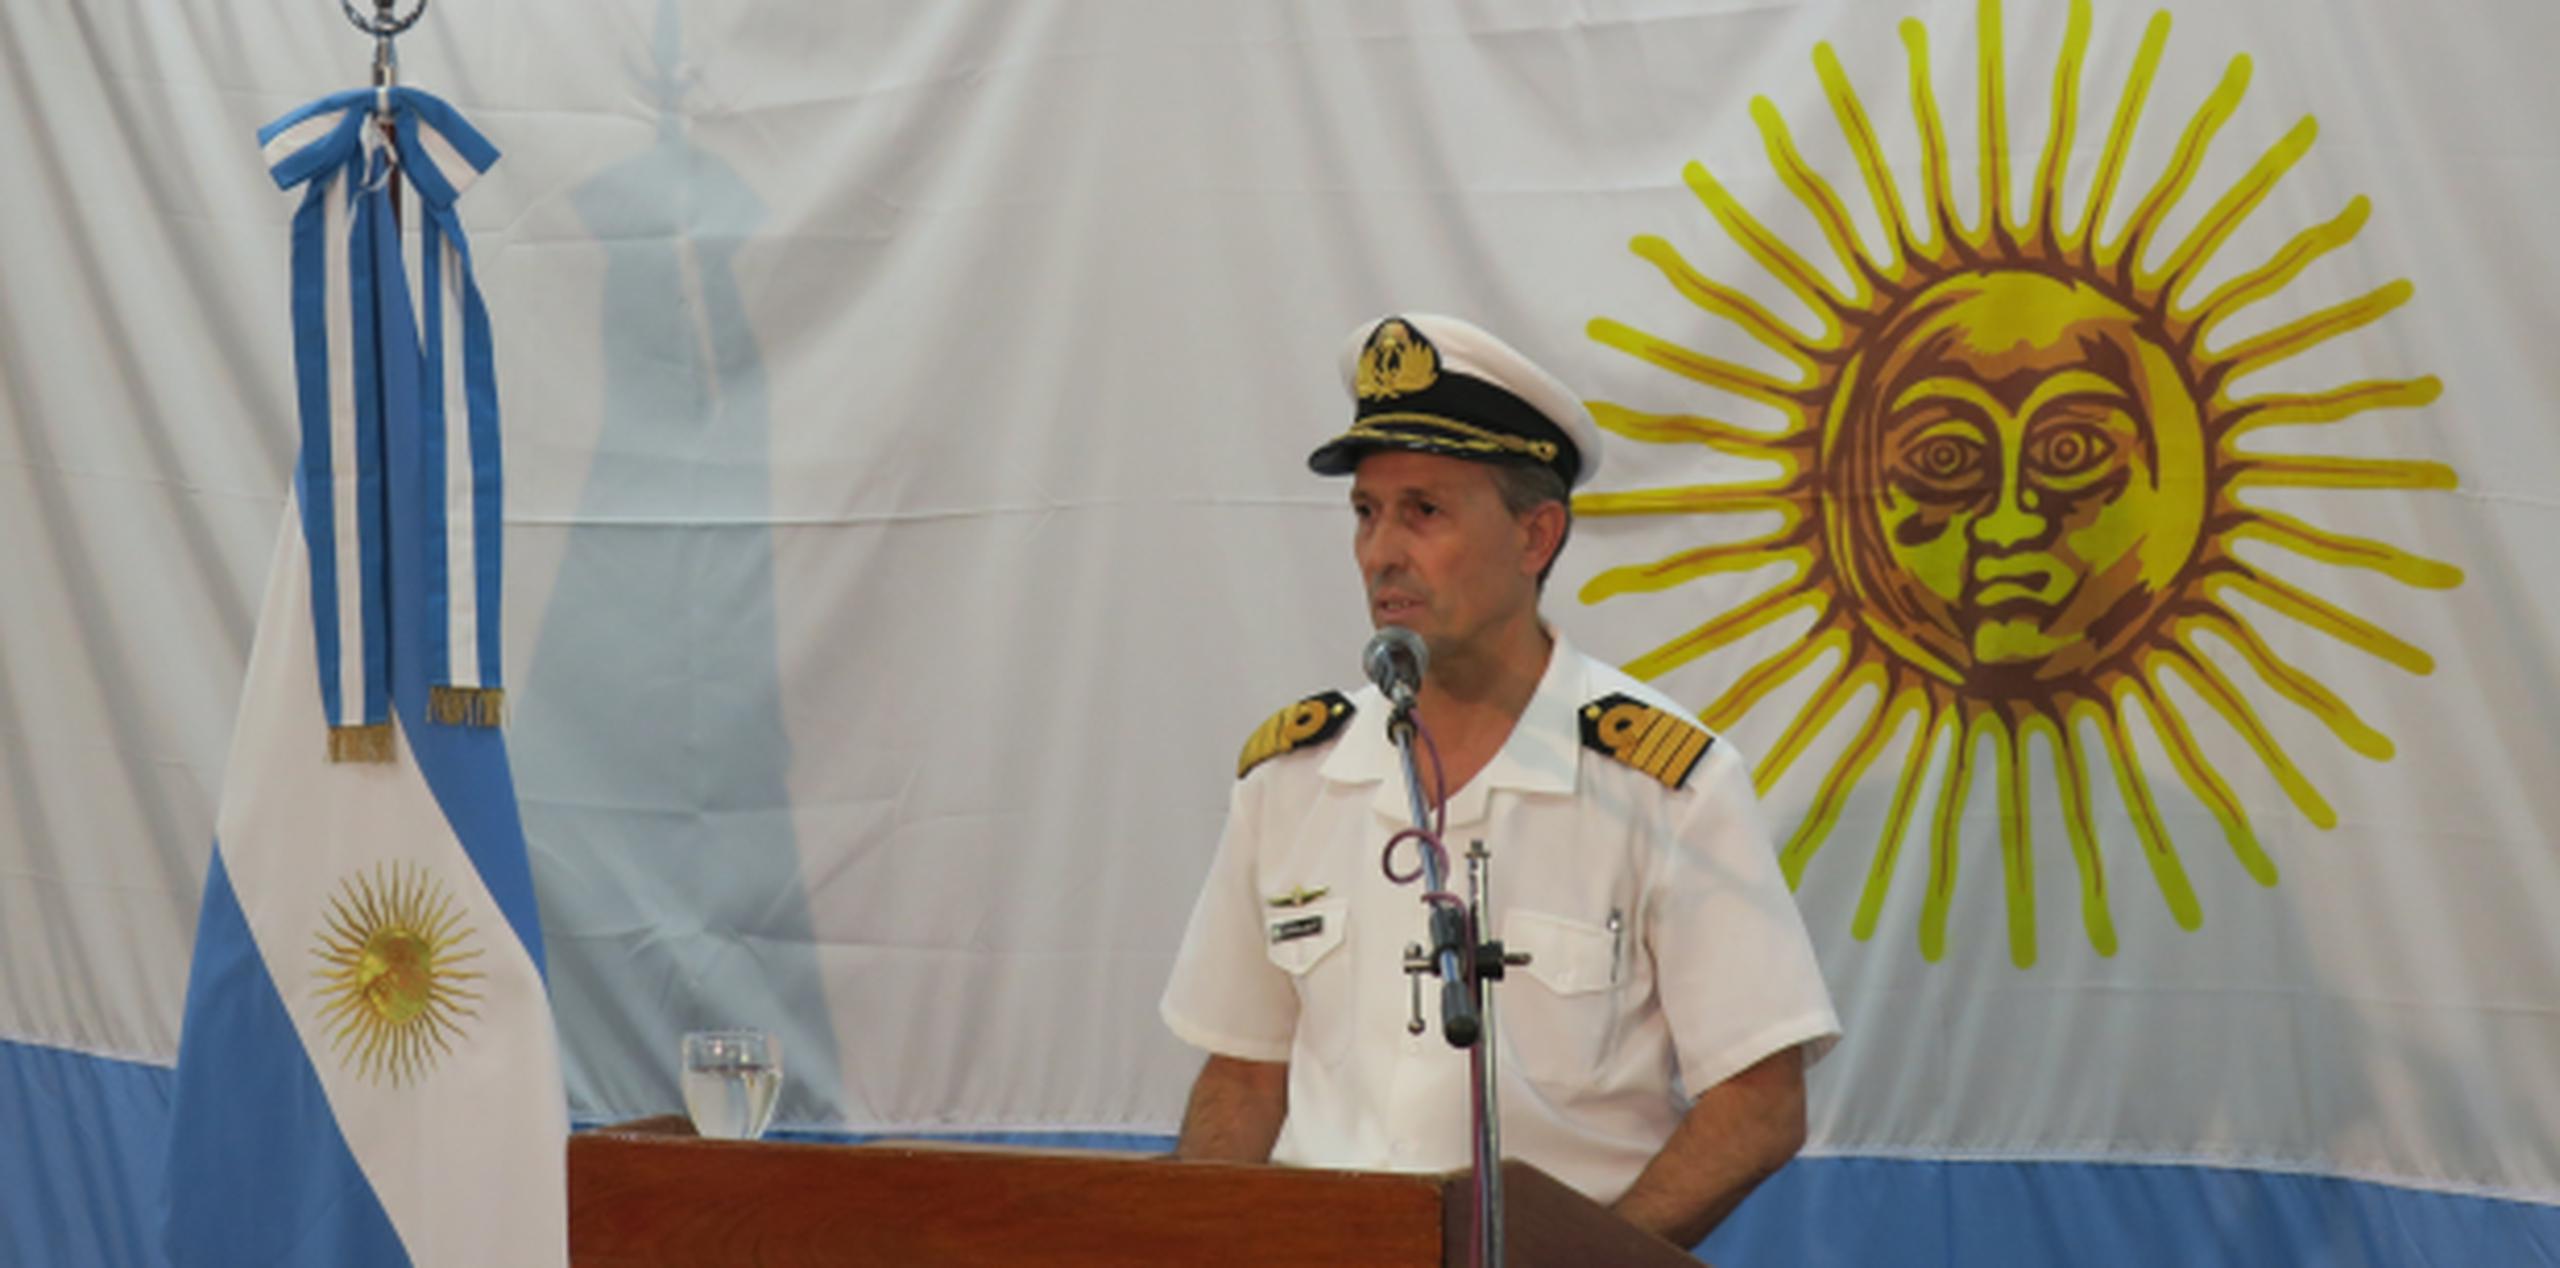 El portavoz de la Armada argentina, Enrique Balbi, ofrece una rueda de prensa. (EFE)